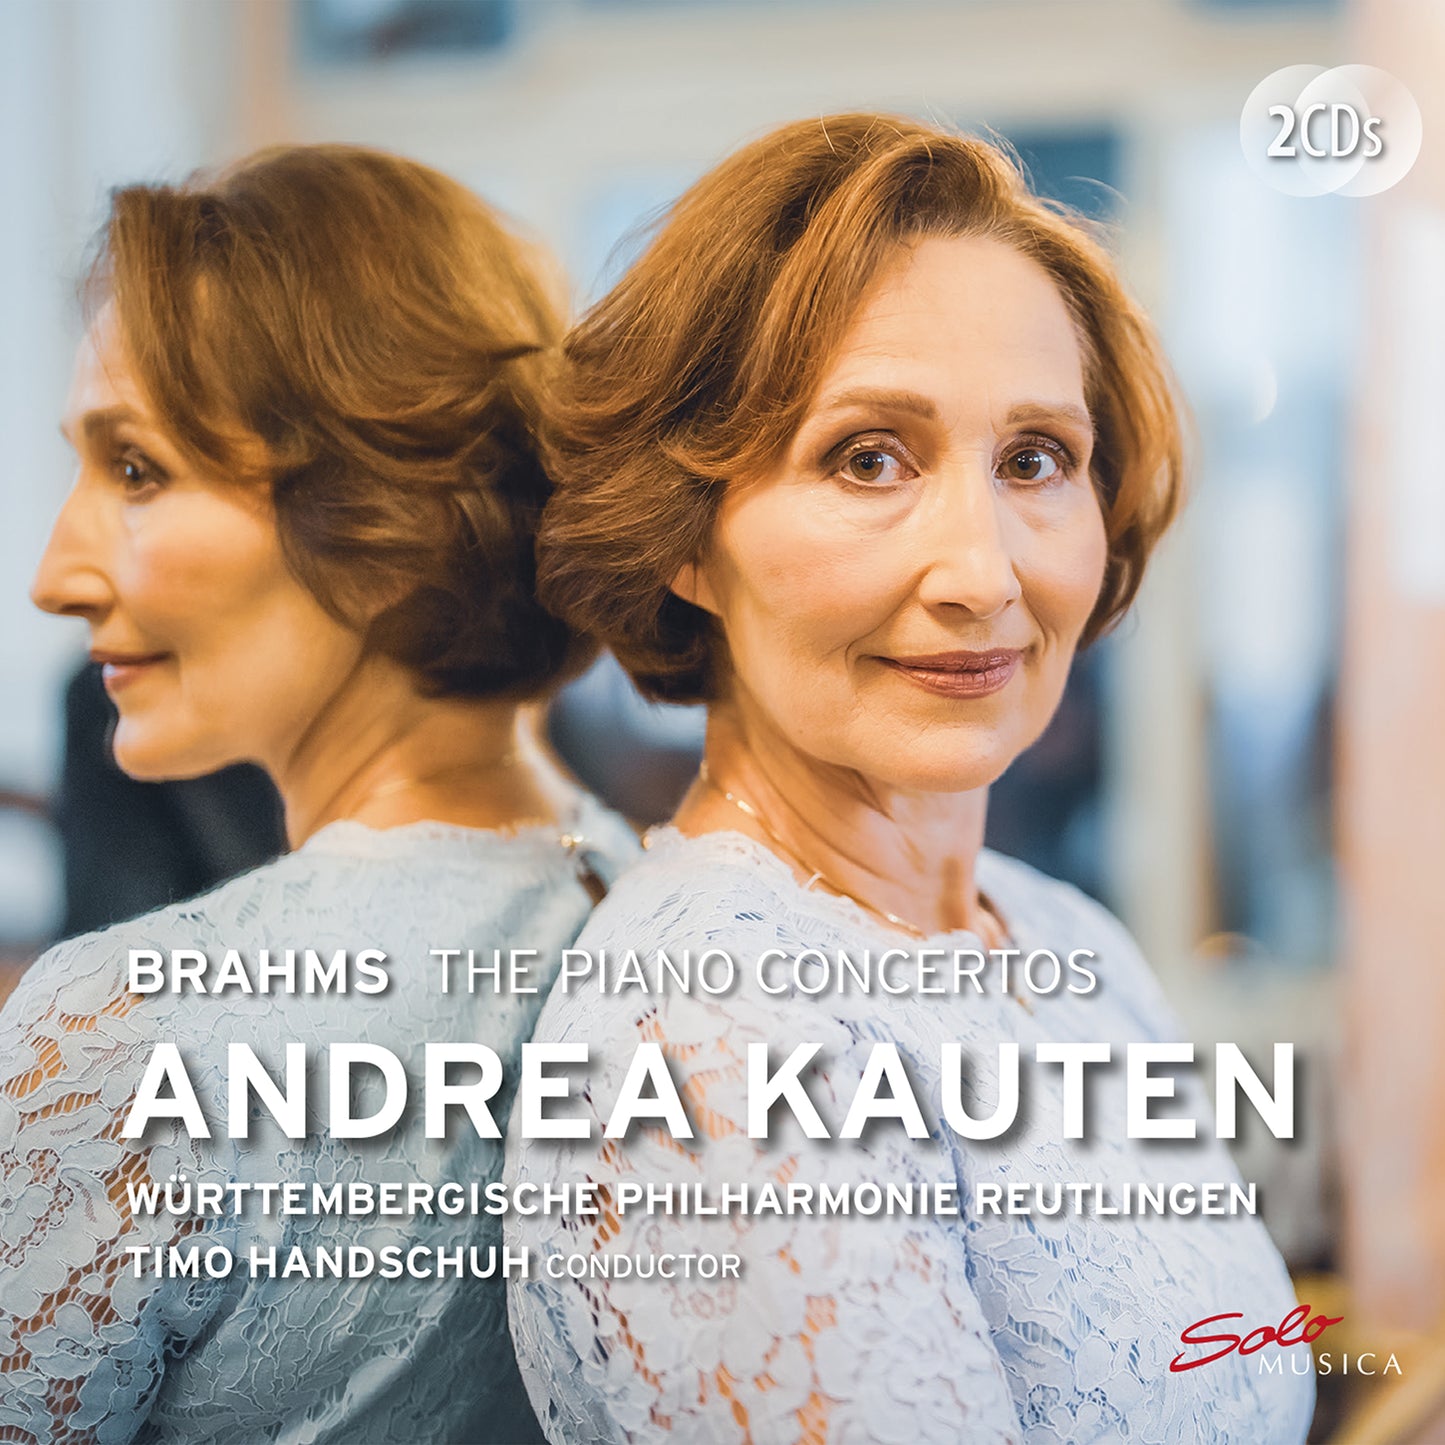 Brahms: The Piano Concertos  Andrea Kauten, Wurttembergische Philharmonie Reutlingen